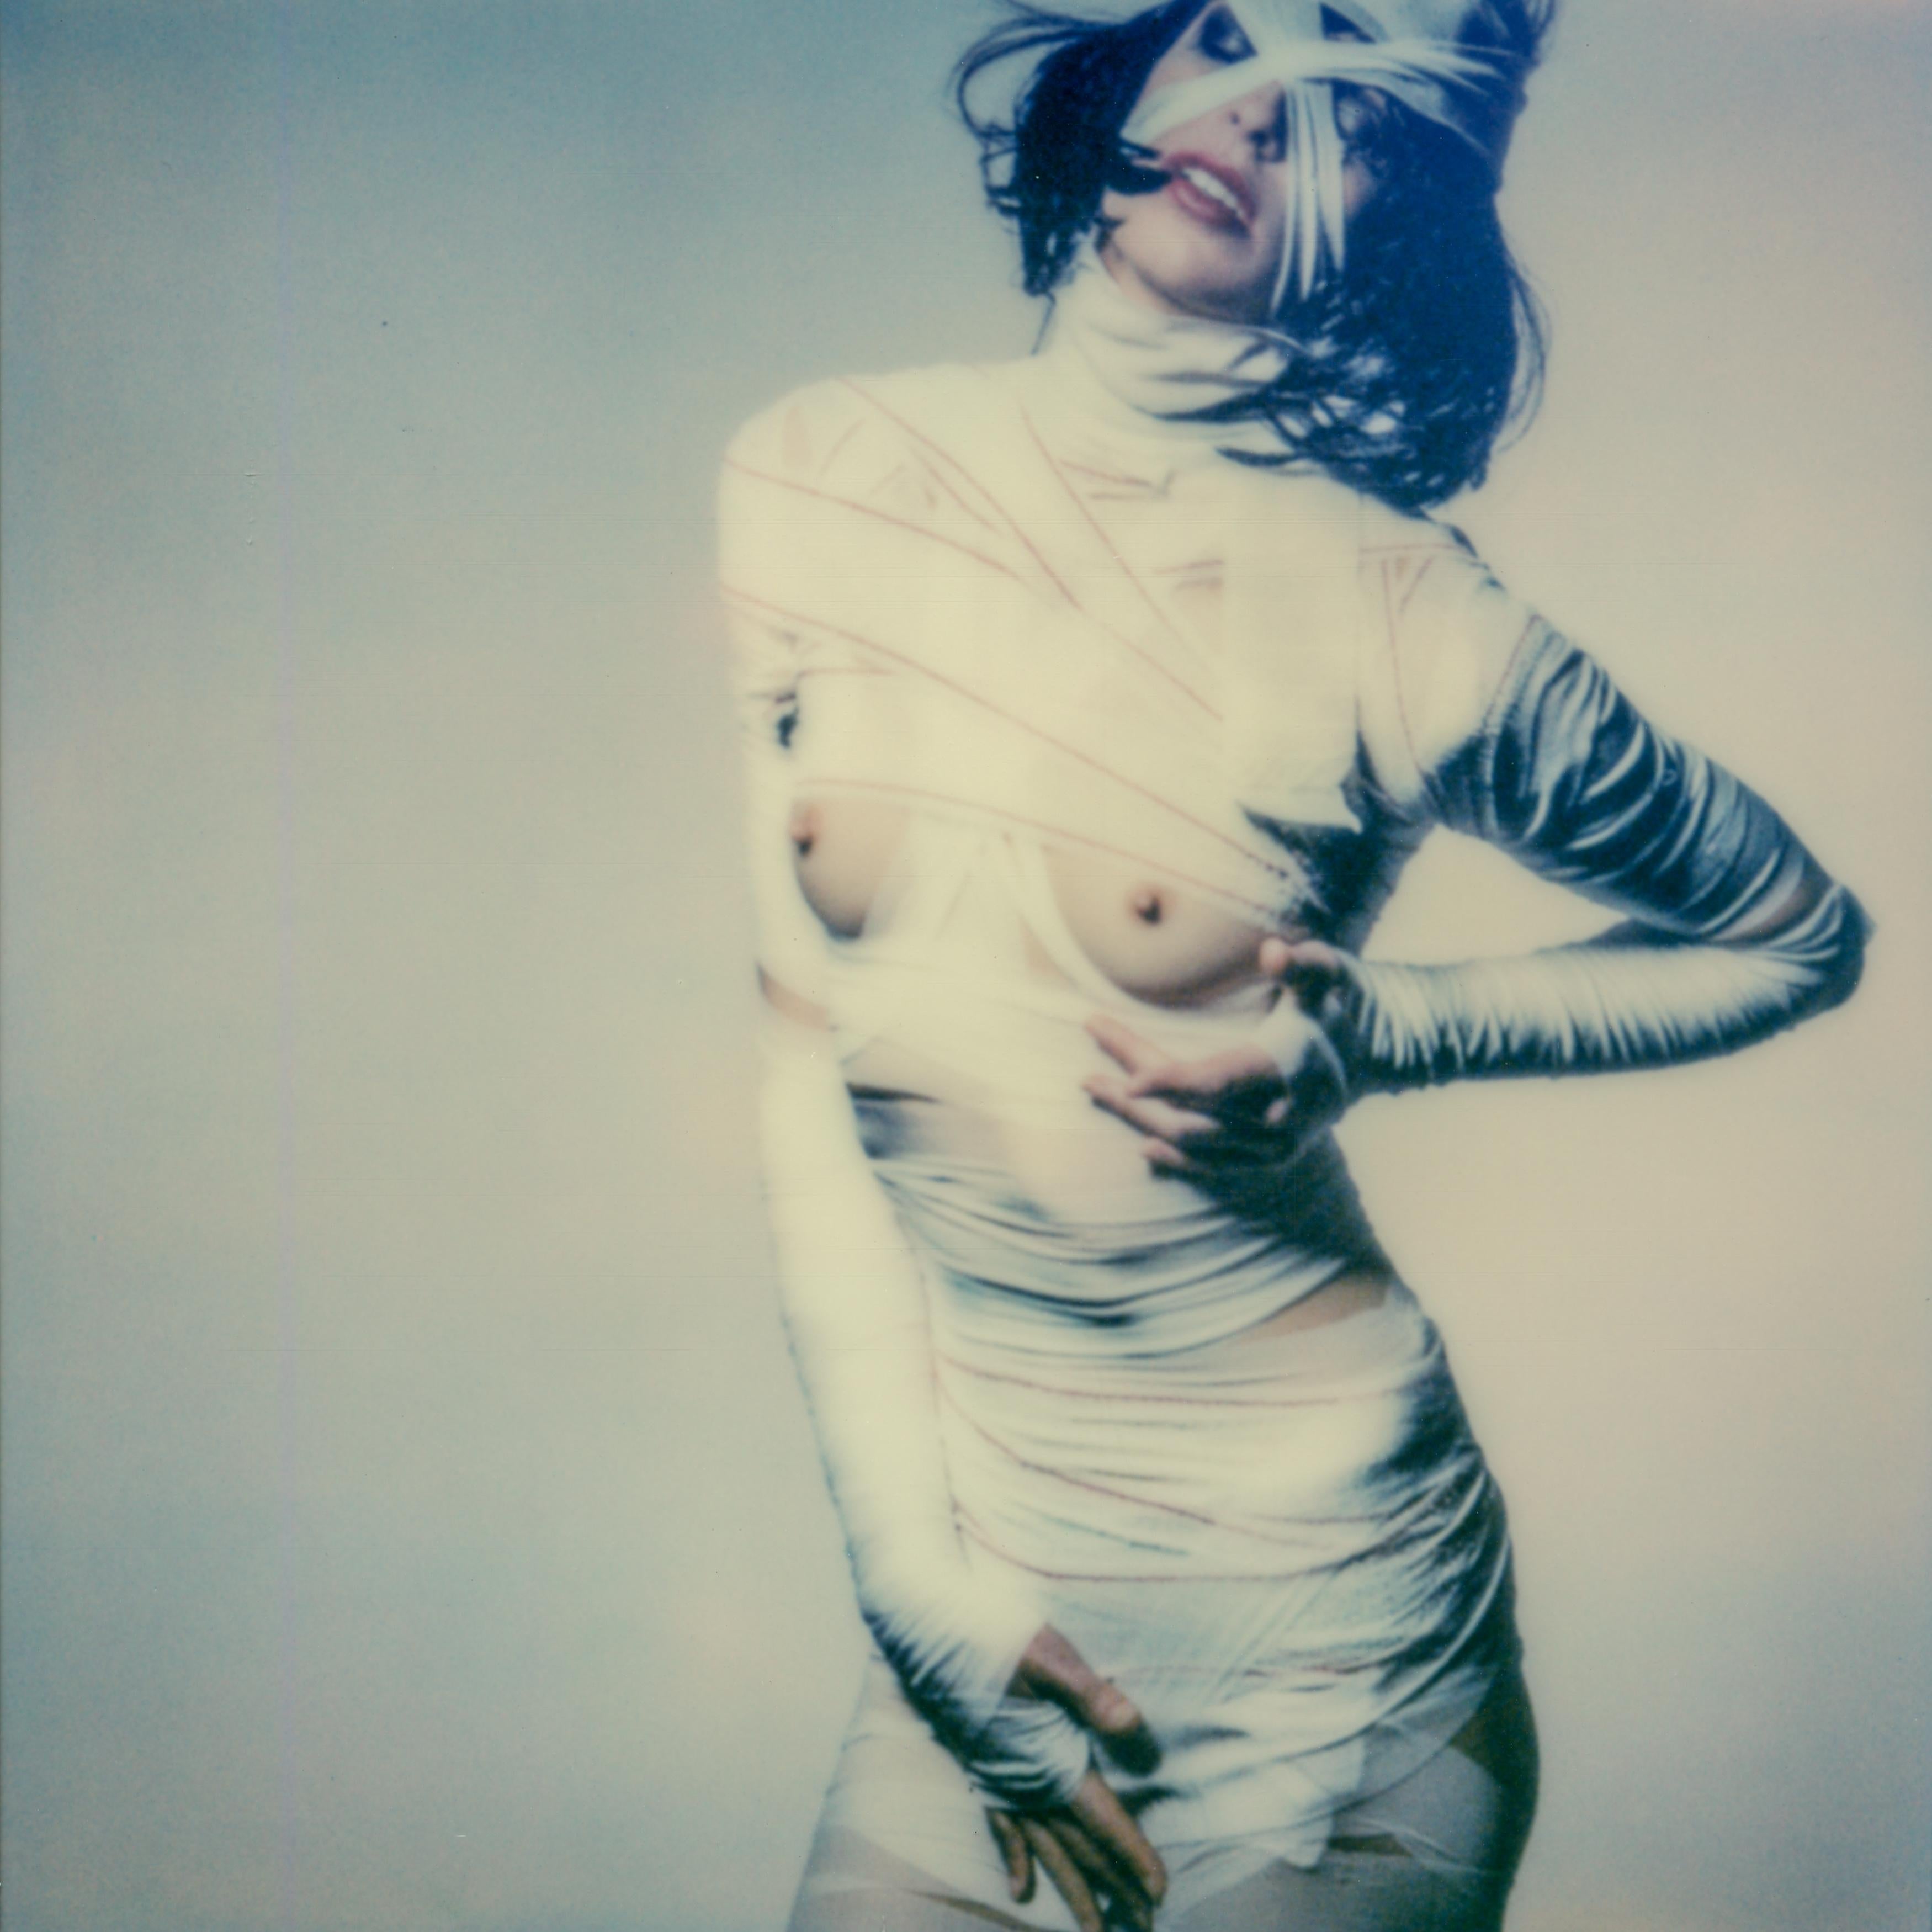 Kirsten Thys van den Audenaerde Color Photograph - Growing pains - Polaroid, Color, Women, 21st Century, Nude